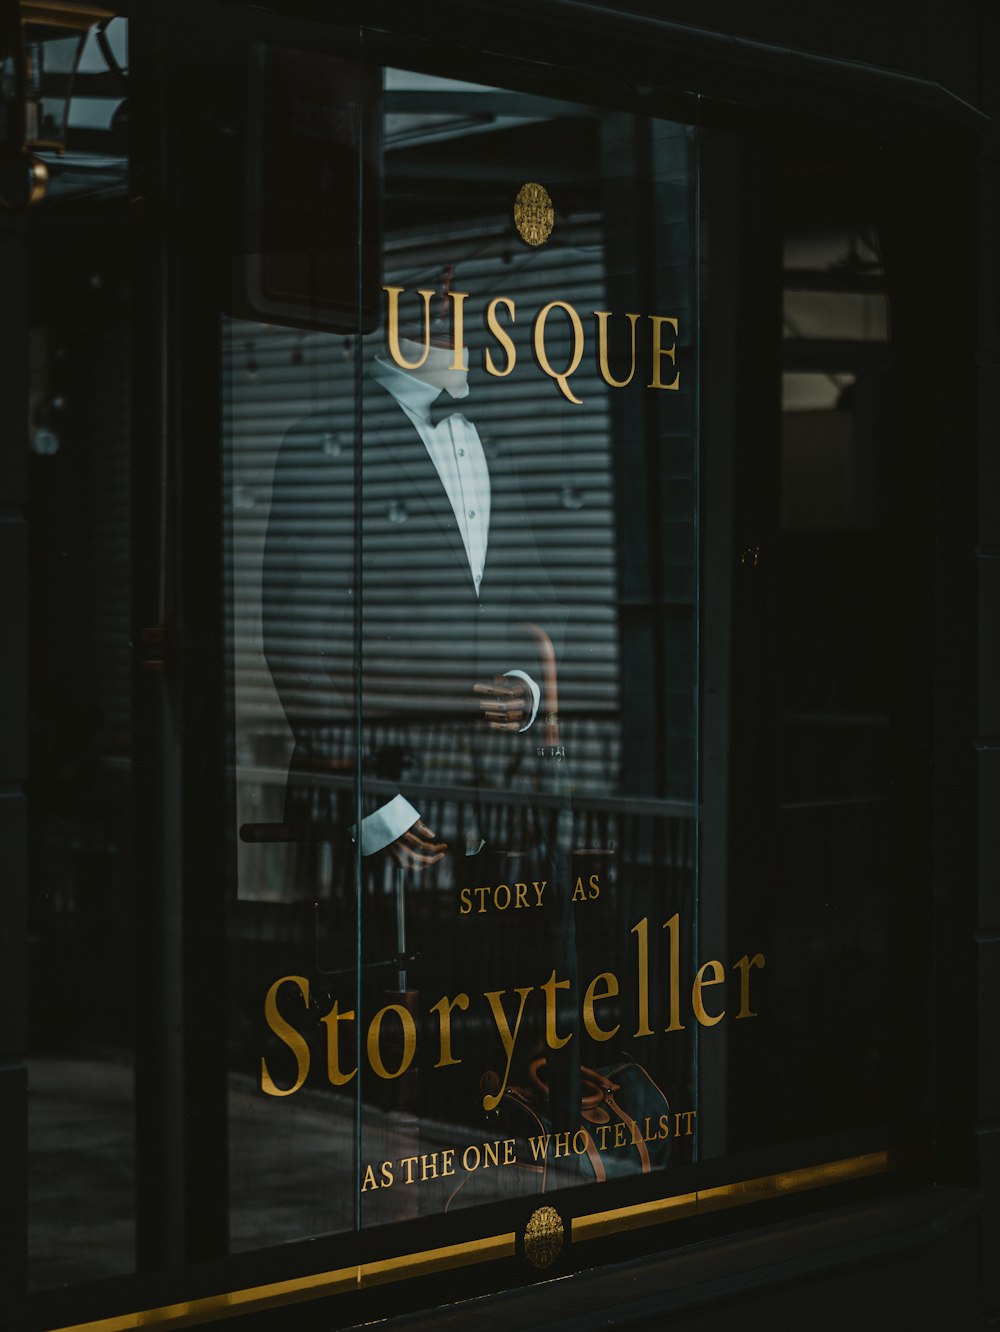 USQUEストーリーテルと書かれた看板のある店の窓